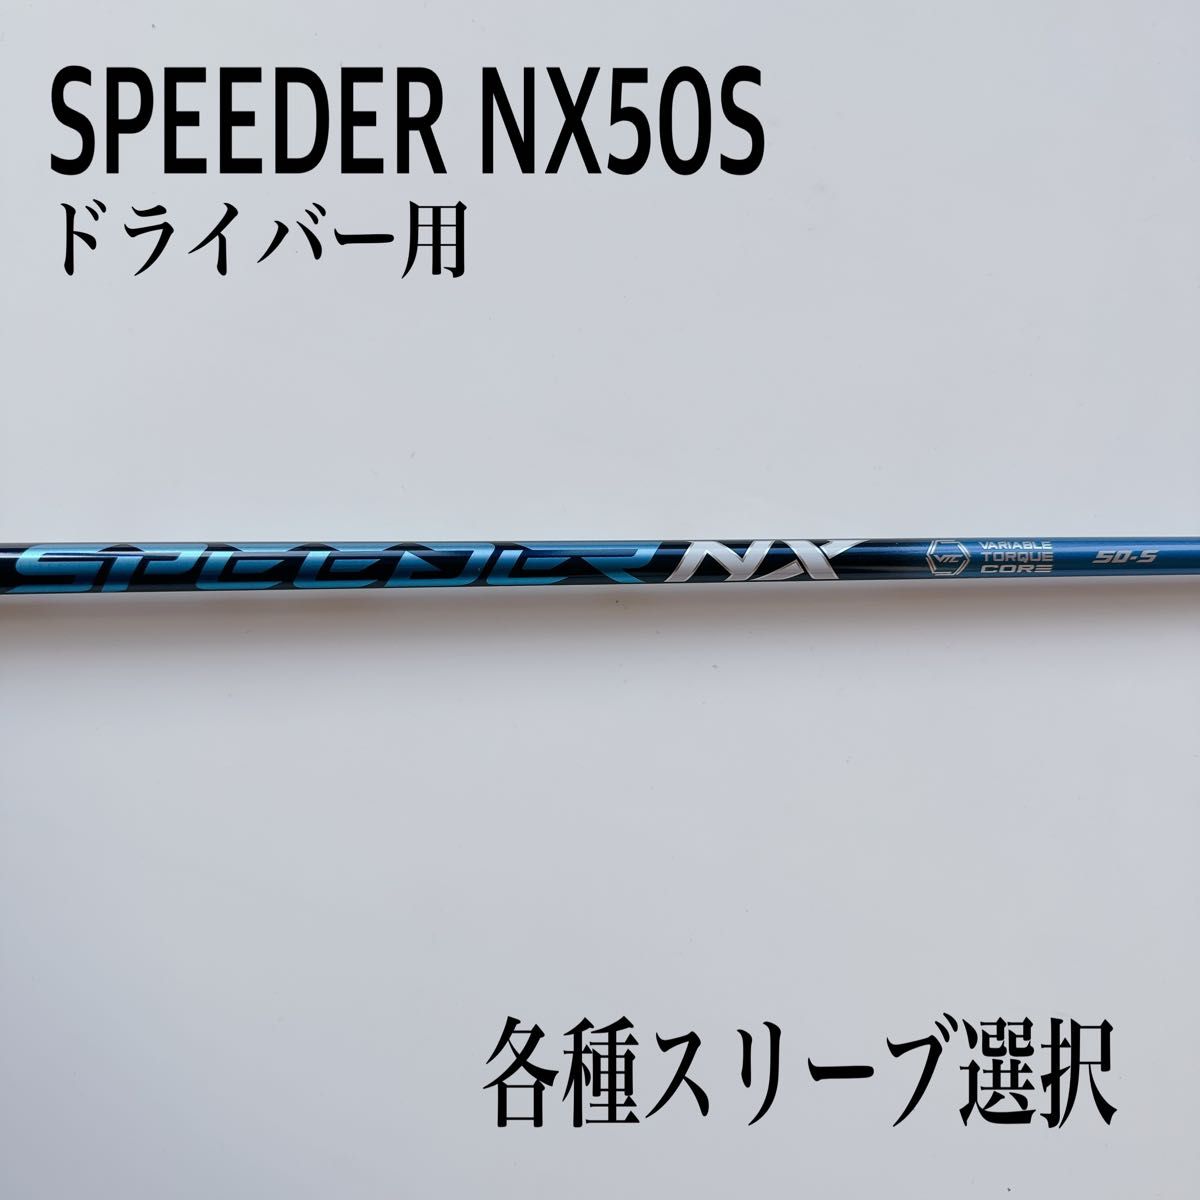 再×14入荷 希少 SPEEDER NX/スピーダーNX 50S ドライバー - 通販